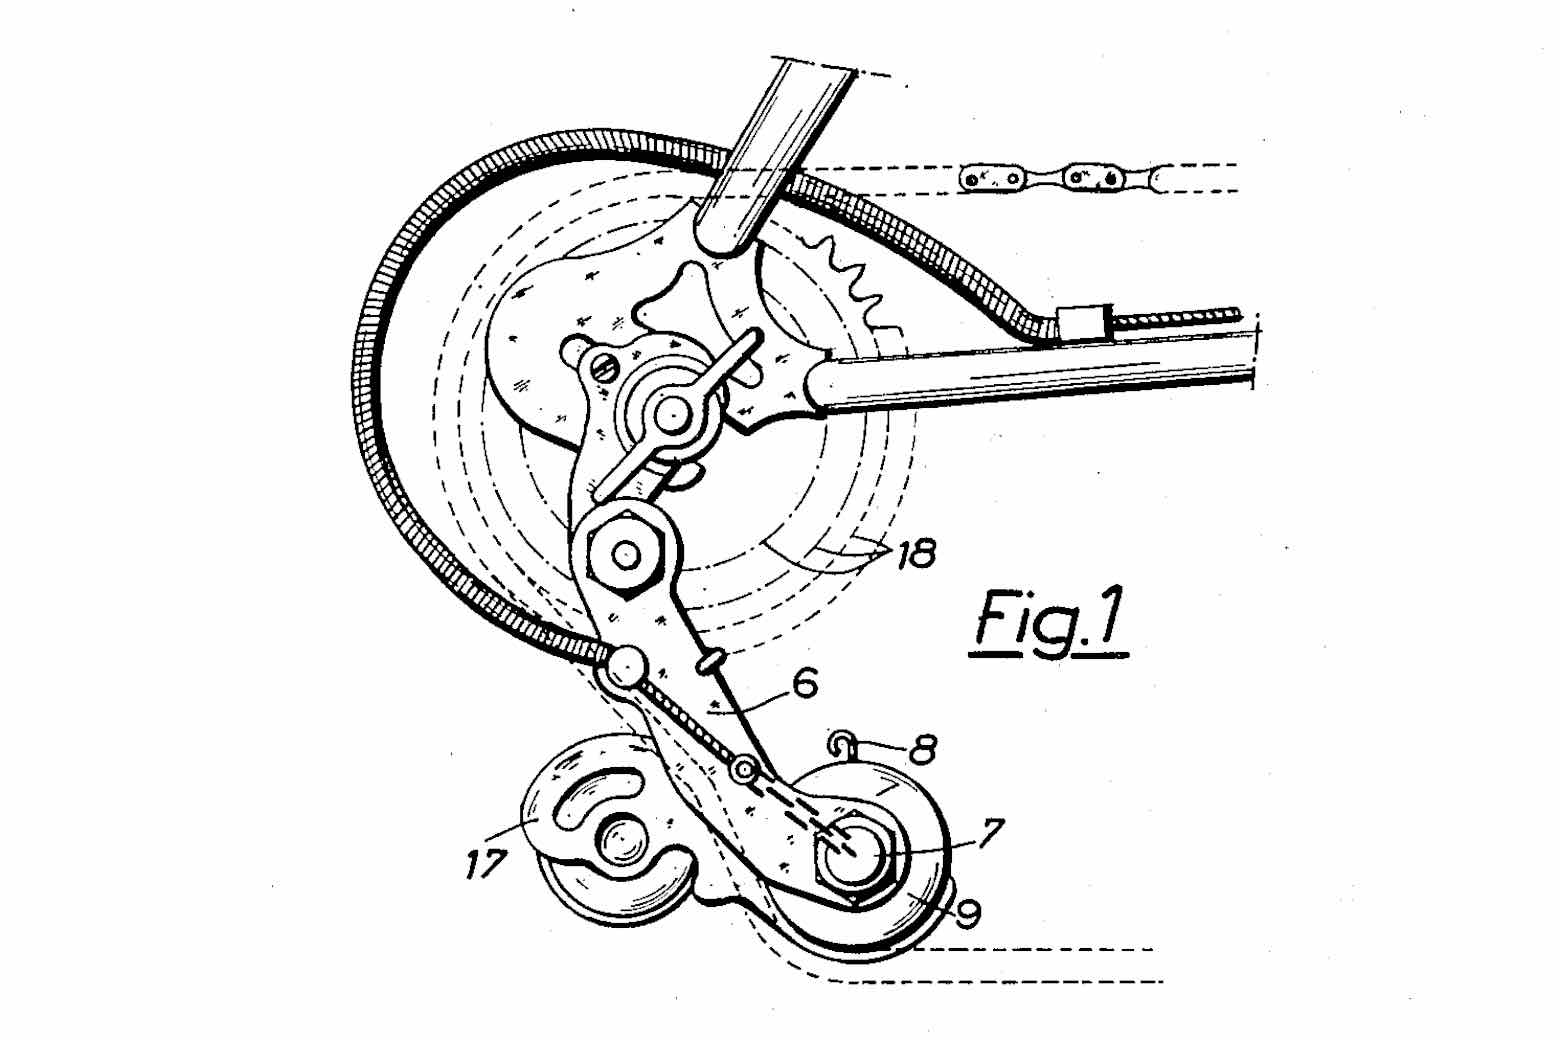 US Patent 2,693,116 - Simplex Tour de France main image